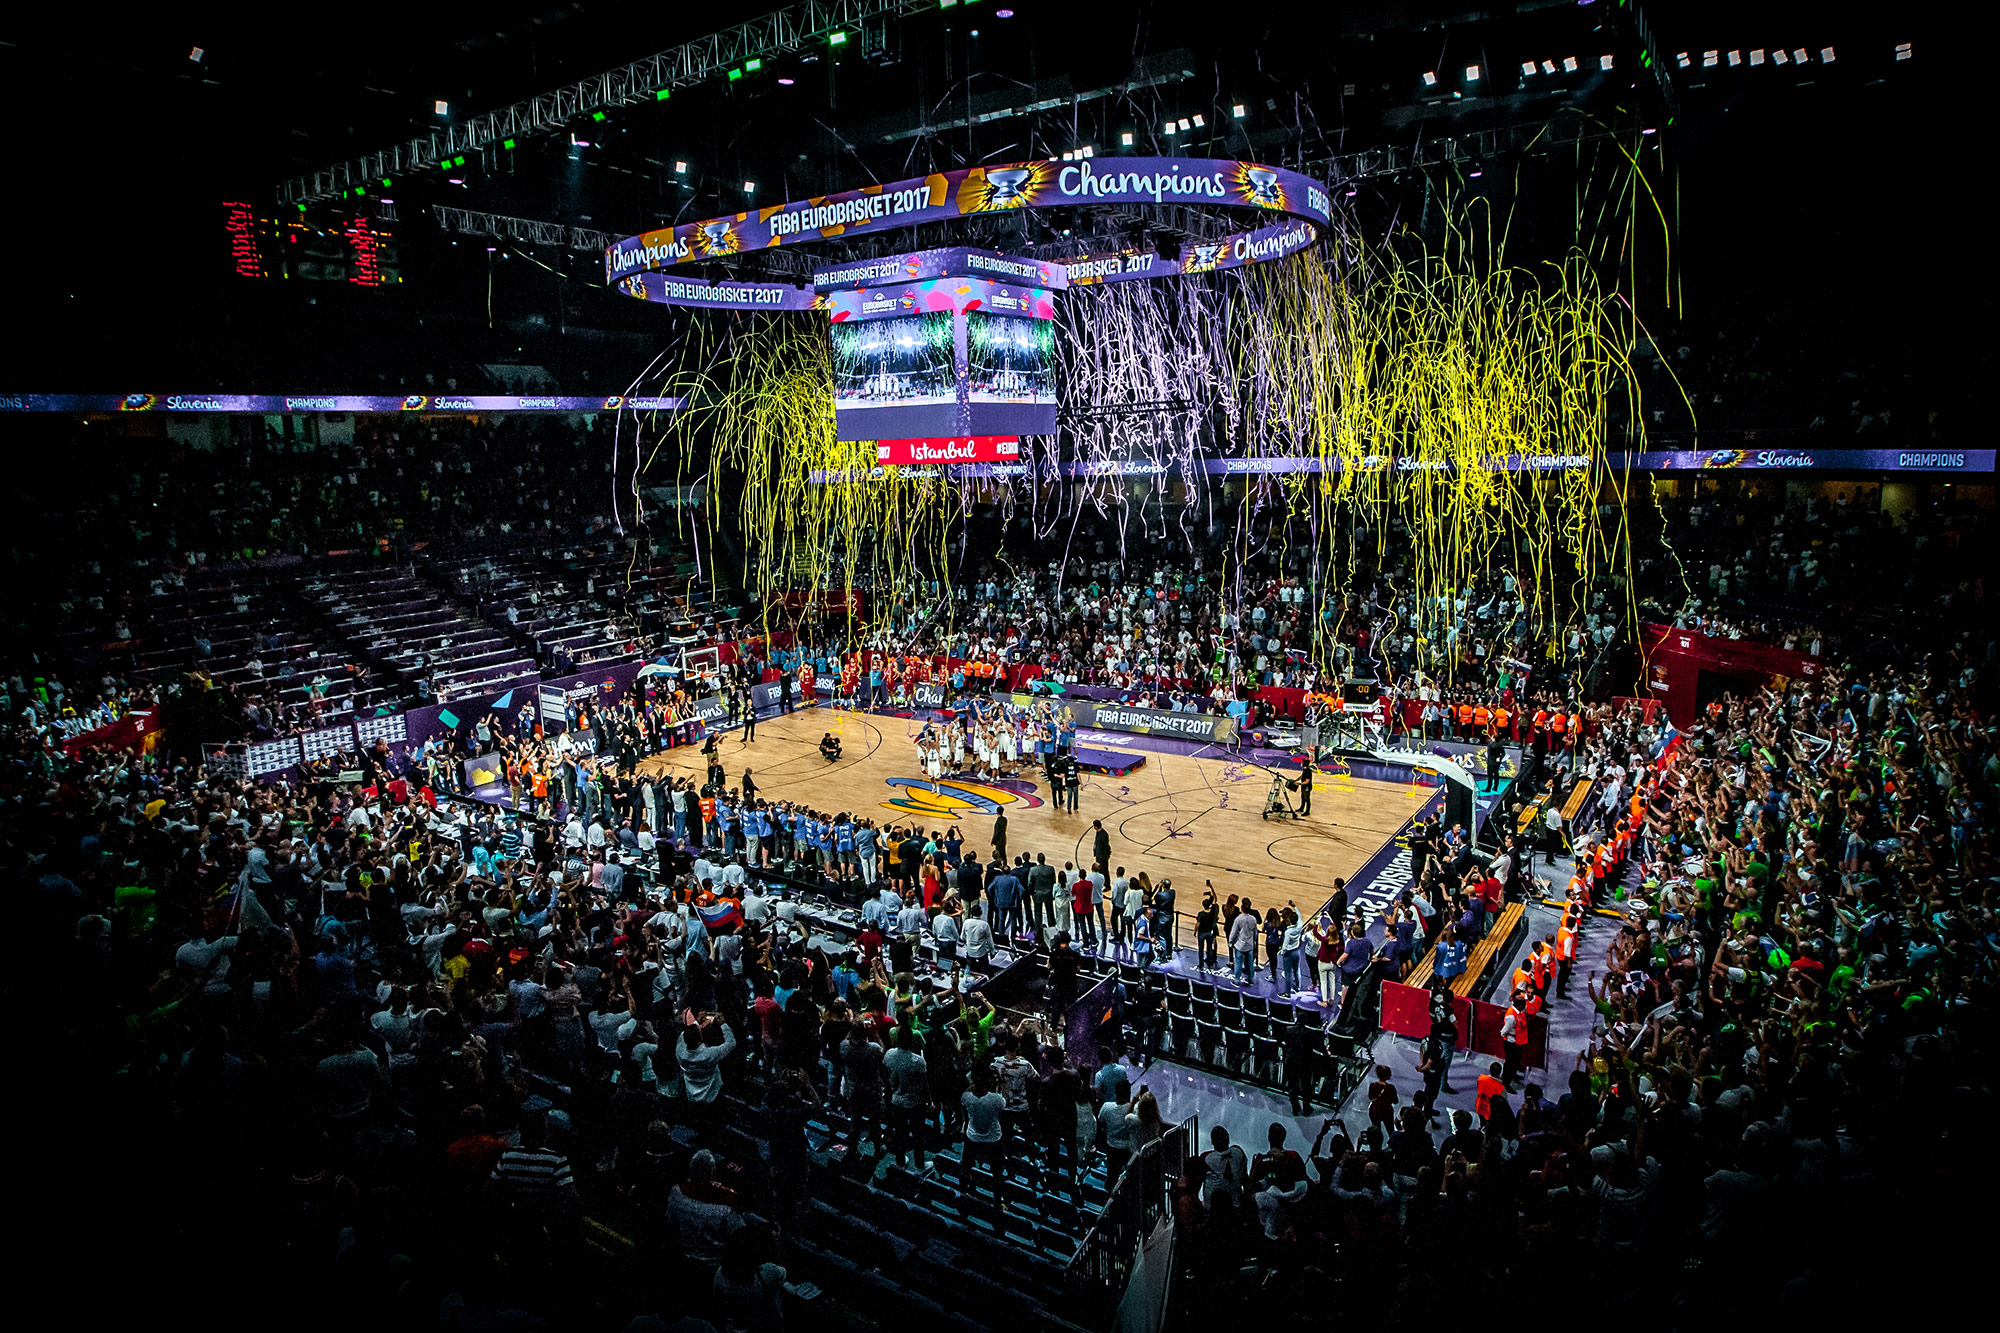 Euro Basket 2017 Closing Ceremony